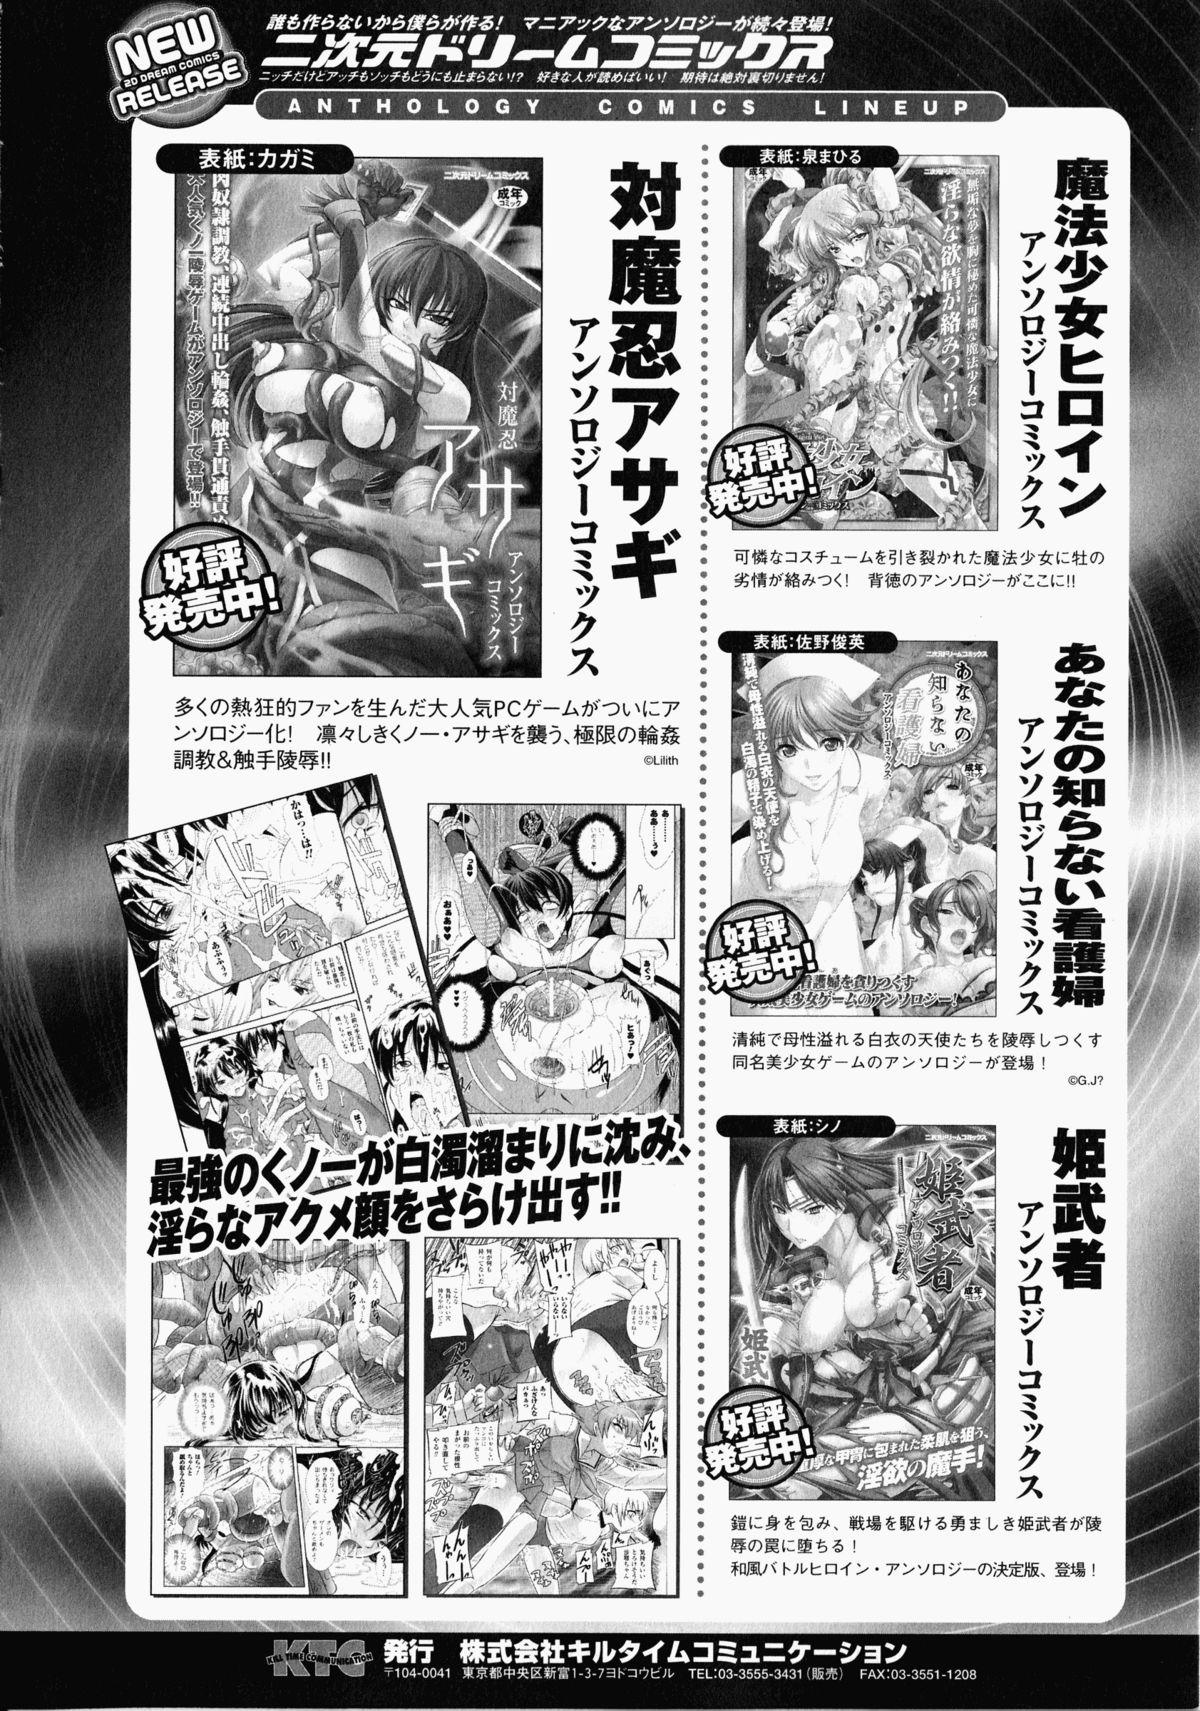 Shirudaku Settai Anthology Comics 162